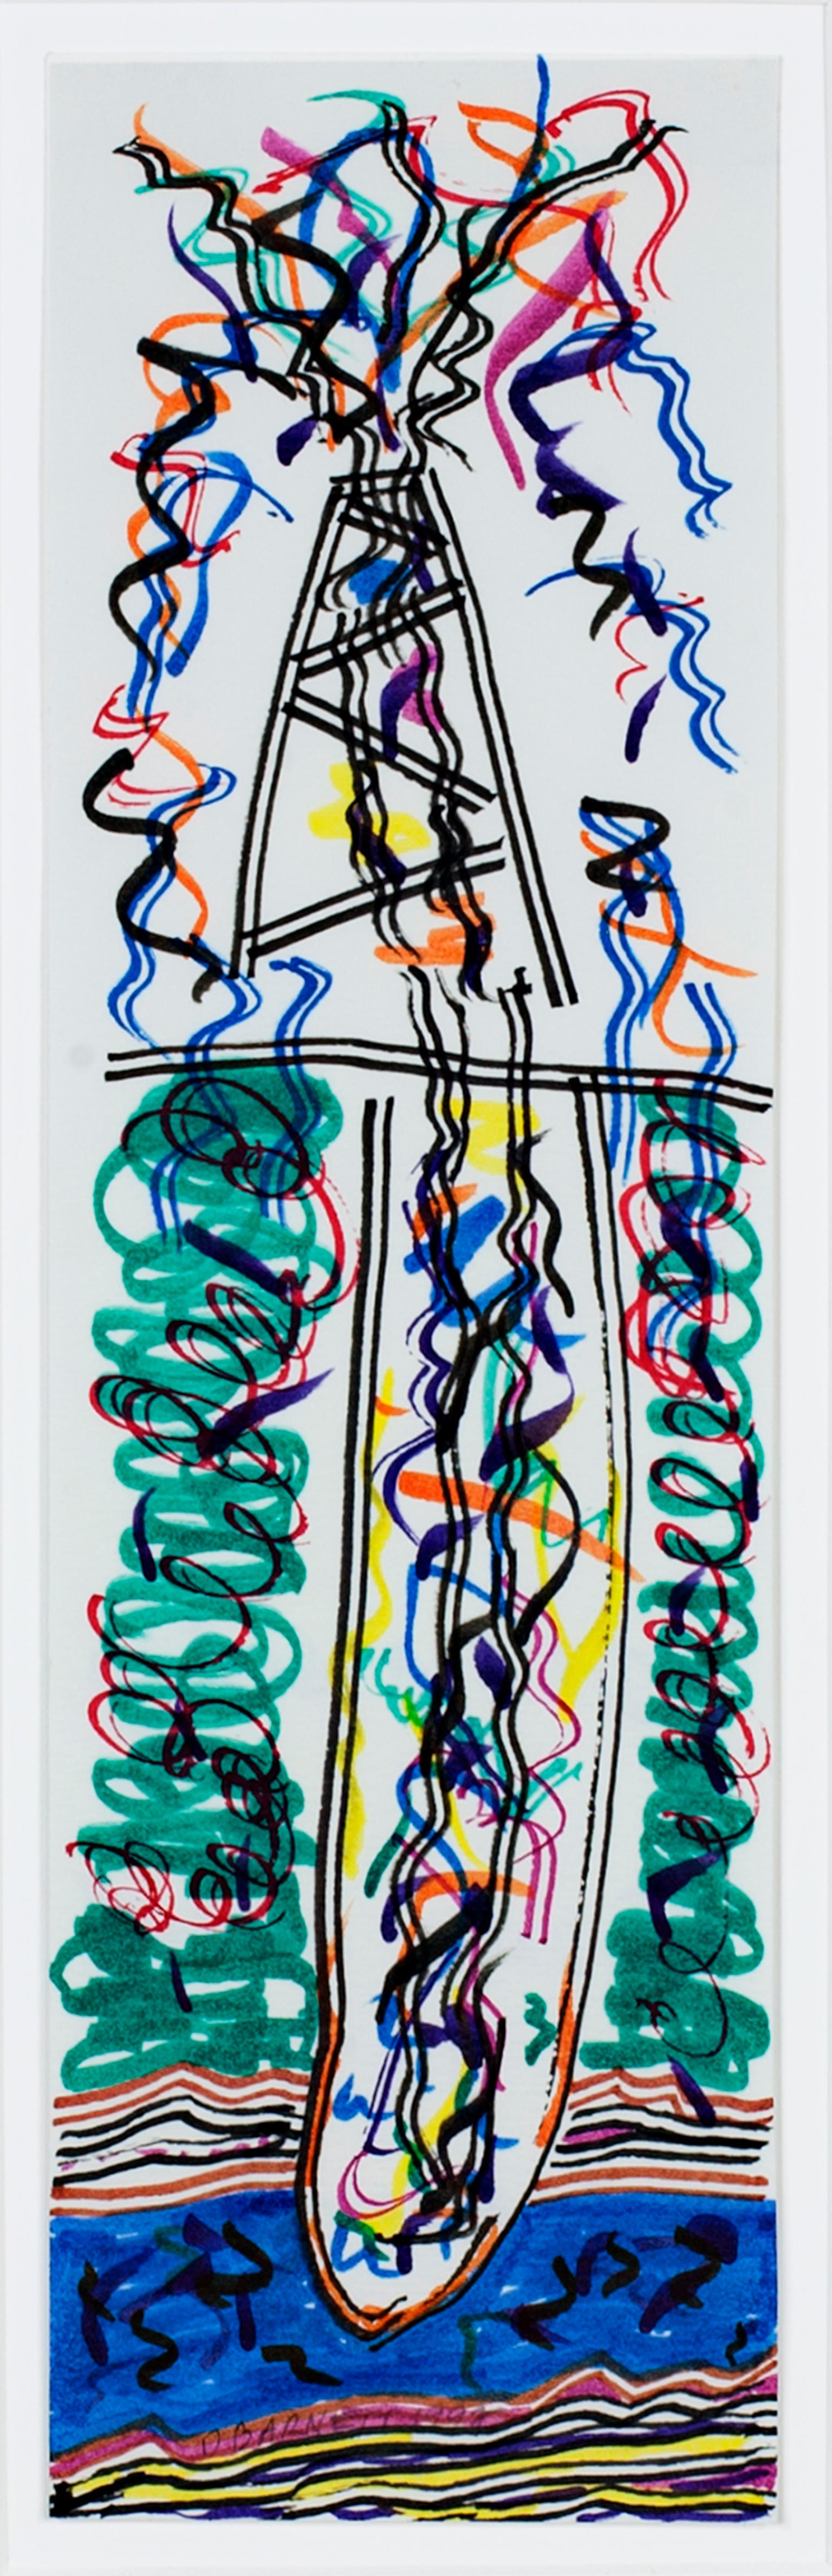 "It's a Gusher II" est un dessin original à l'encre de David Barnett, signé en bas au centre dans la bande rouge. Elle représente une plate-forme pétrolière qui explose en noir et en couleur, imitant l'aspect kaléidoscopique du pétrole à la surface